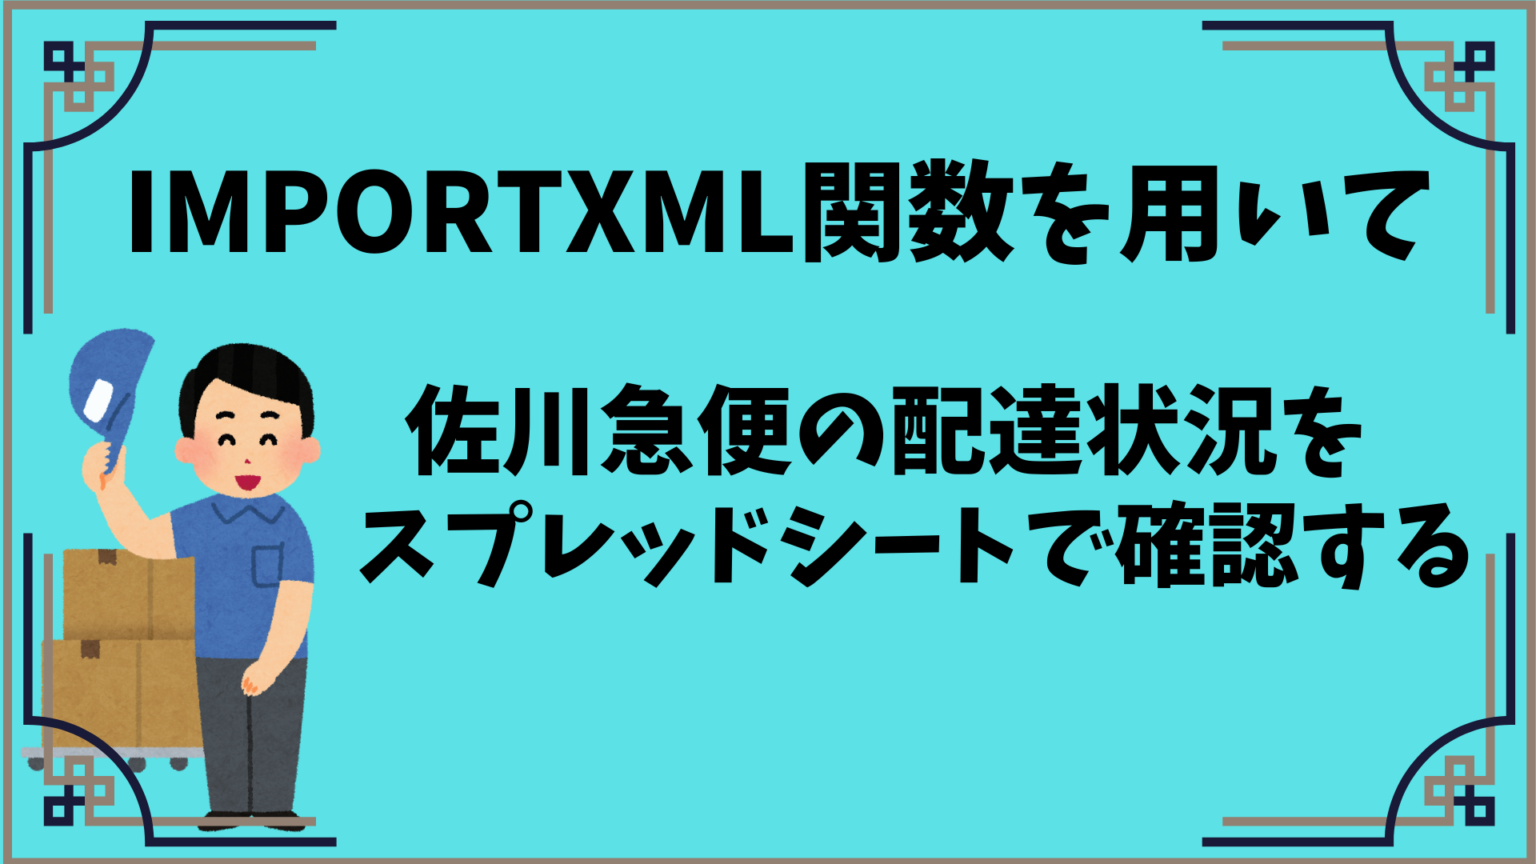 スプレッドシート】IMPORTXMLを用いて佐川急便の配達状況を確認できる 